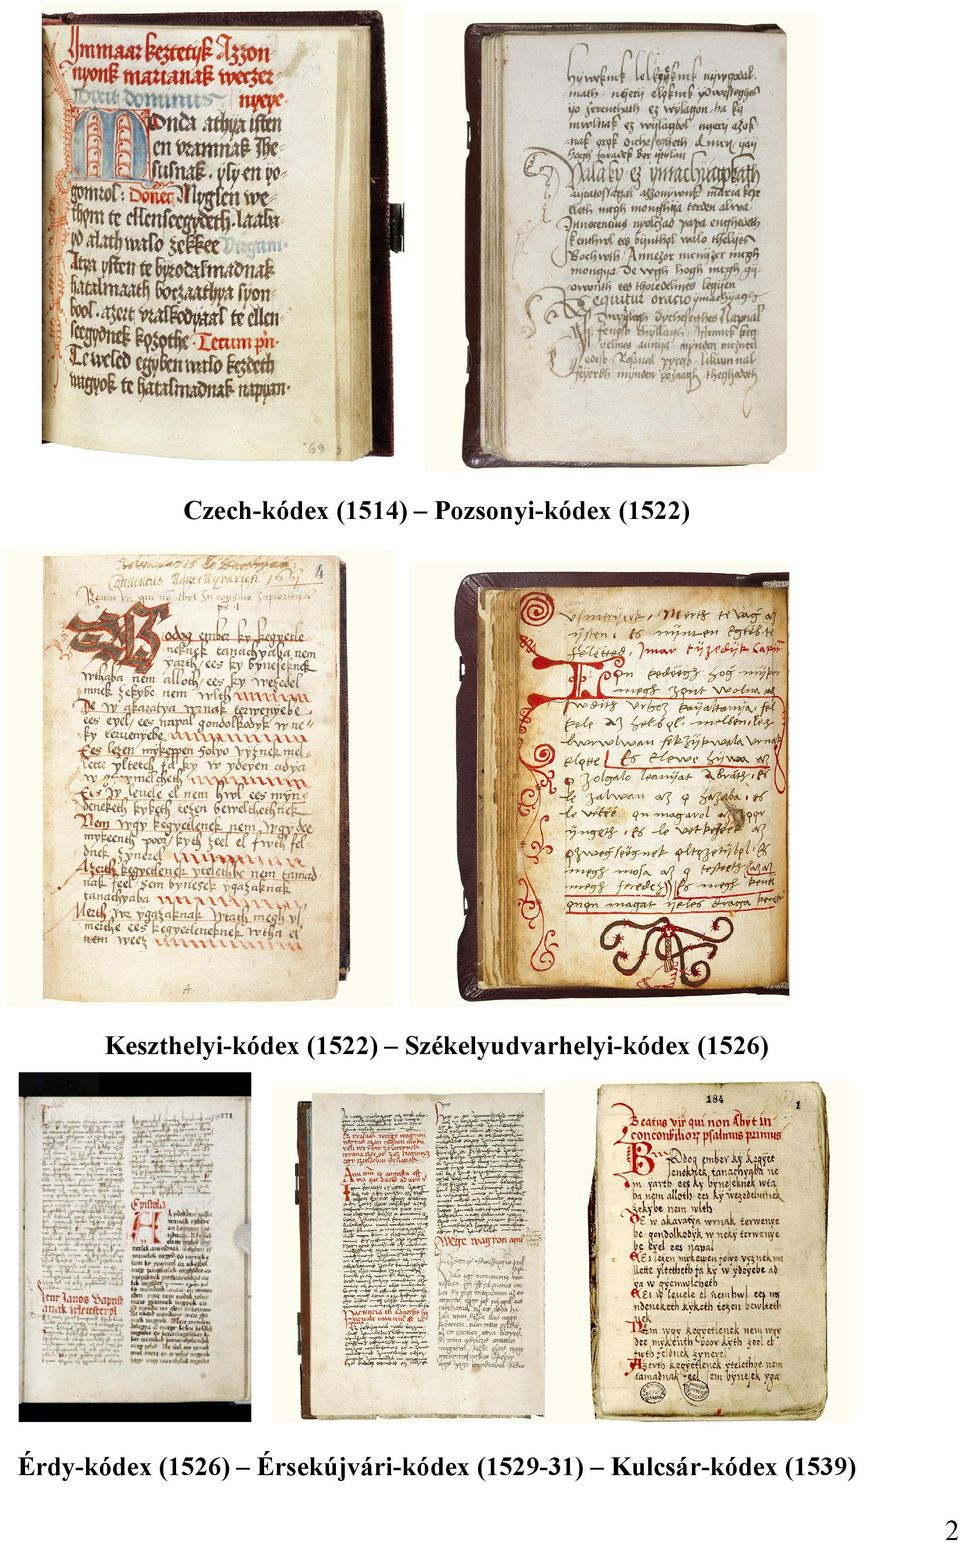 Székelyudvarhelyi-kódex (1526)